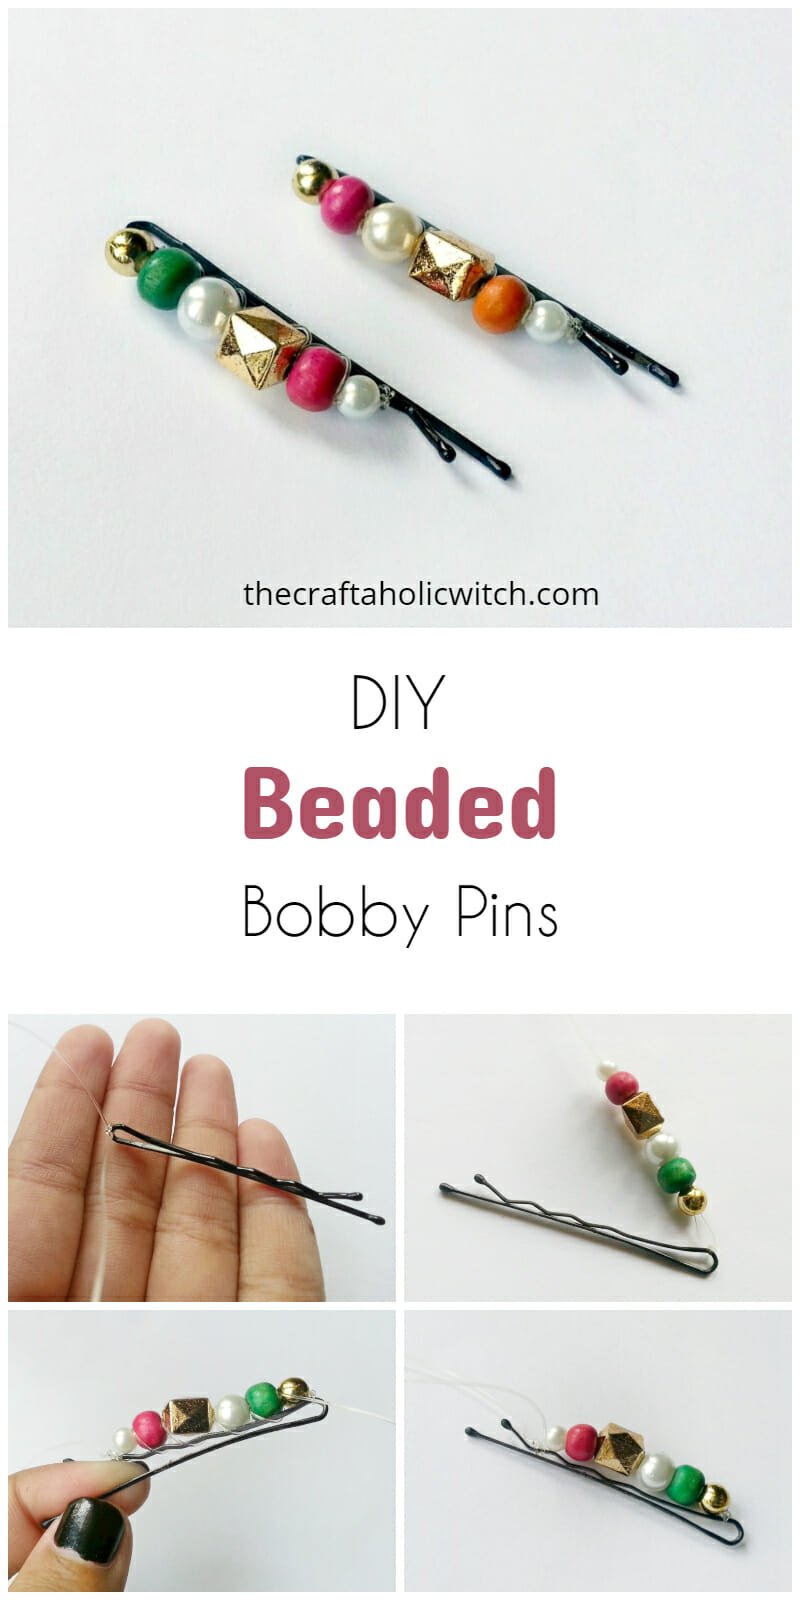 beaded bobby pins pin image - DIY Beaded Bobby Pins